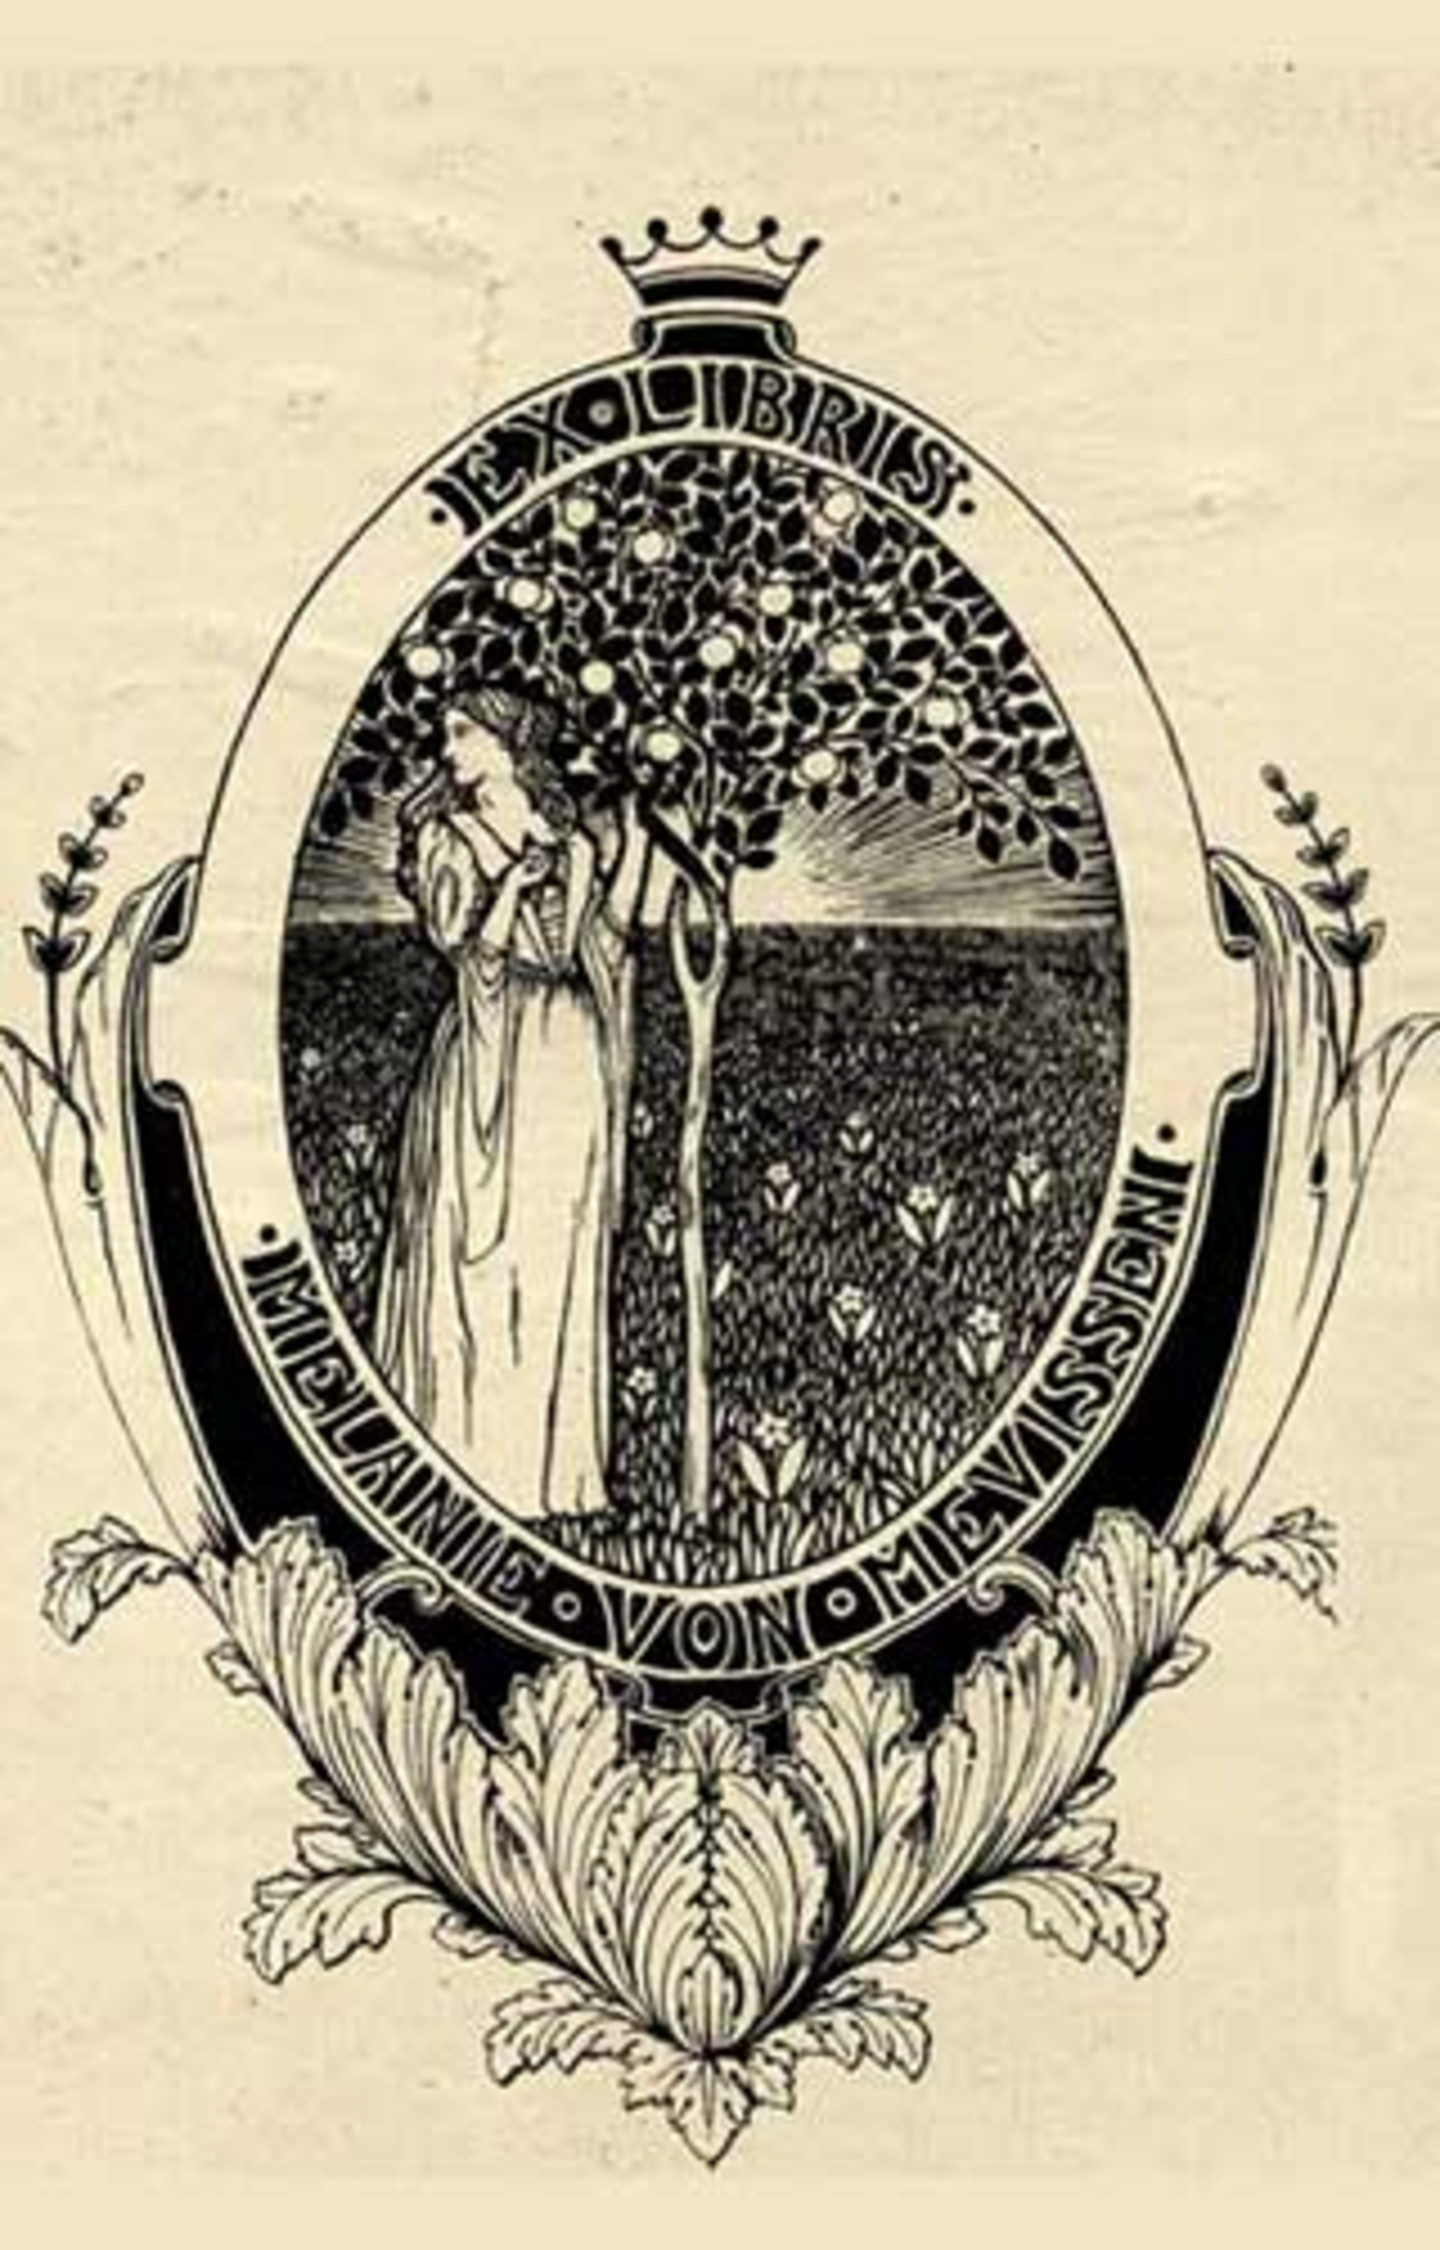 Schwarz-Weiß-Zeichnung im Jugendstil: Ein ovales Medaillon zeigt in der Mitte eine junge Frau neben einem Apfelbaum. Im Hintergrund geht die Sonne auf. Oben steht Ex Libris, unten steht Melanie von Mevissen 